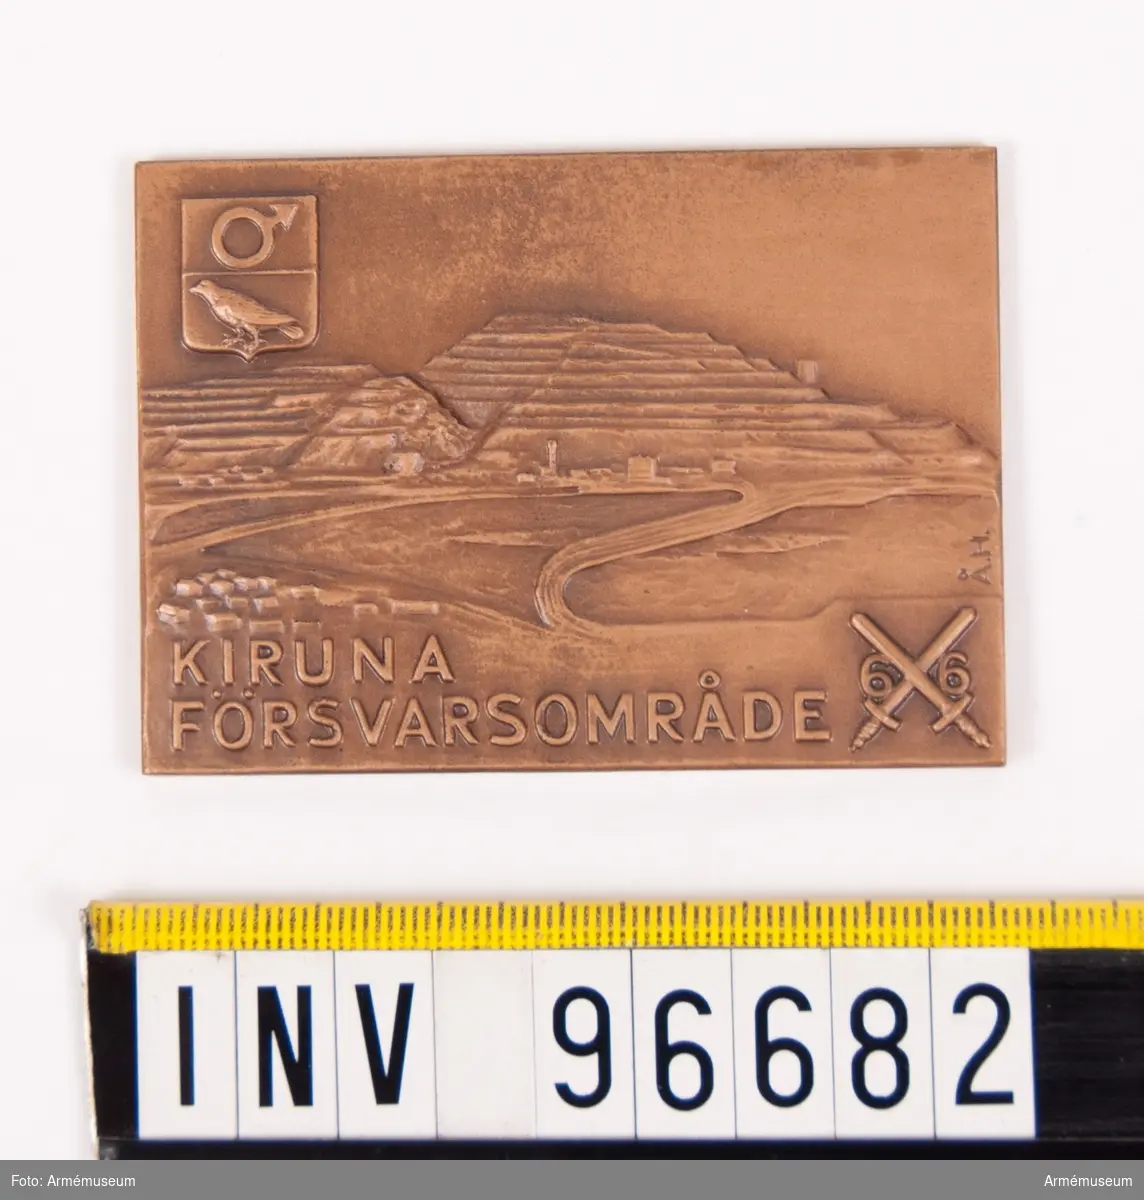 Plakett i brons för Kiruna försvarsområde.
Stans 45991